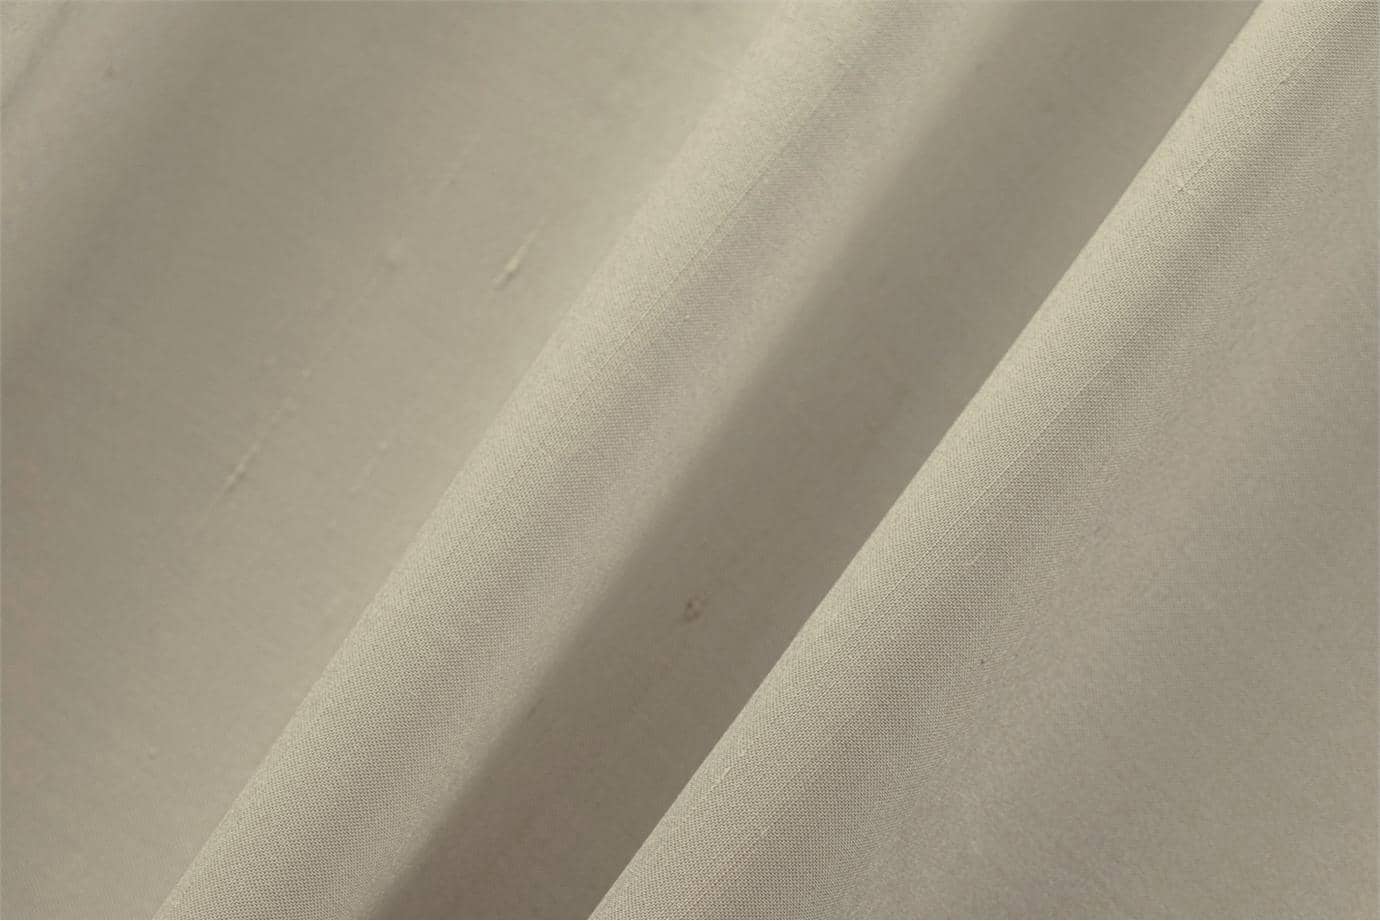 Tissu Double Shantung Beige sable en Coton, Soie pour vêtements